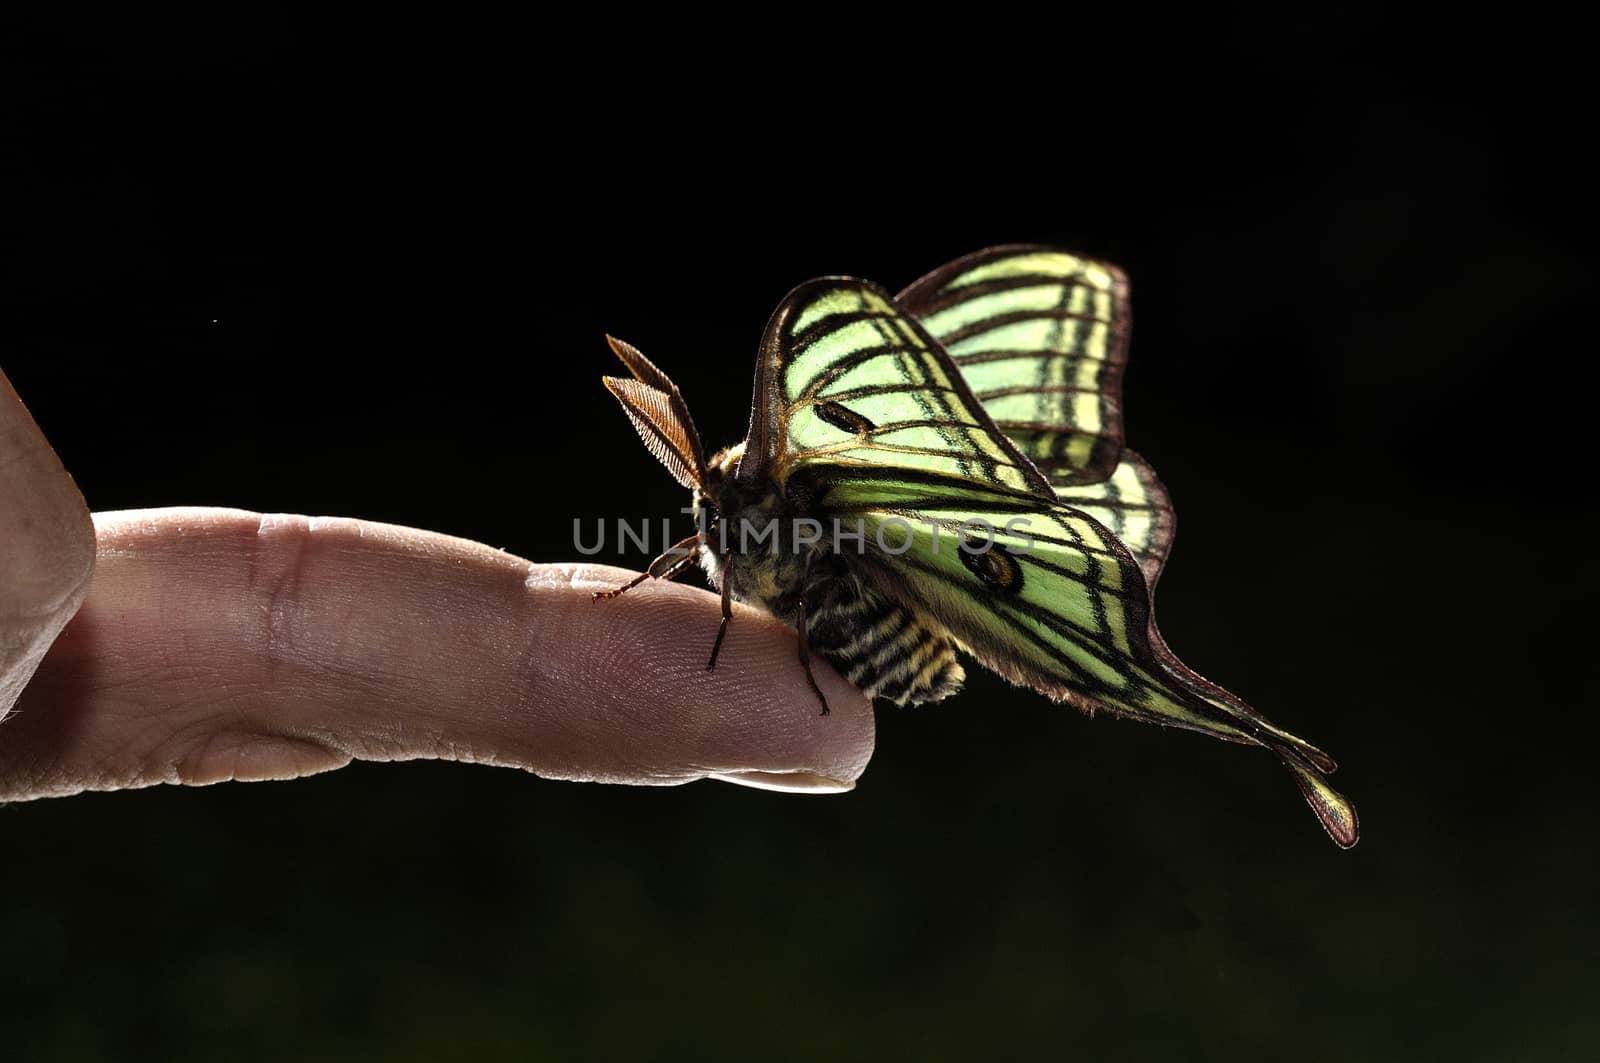 Elizabethan butterfly (Graellsia isabelae), on one finger, Spain